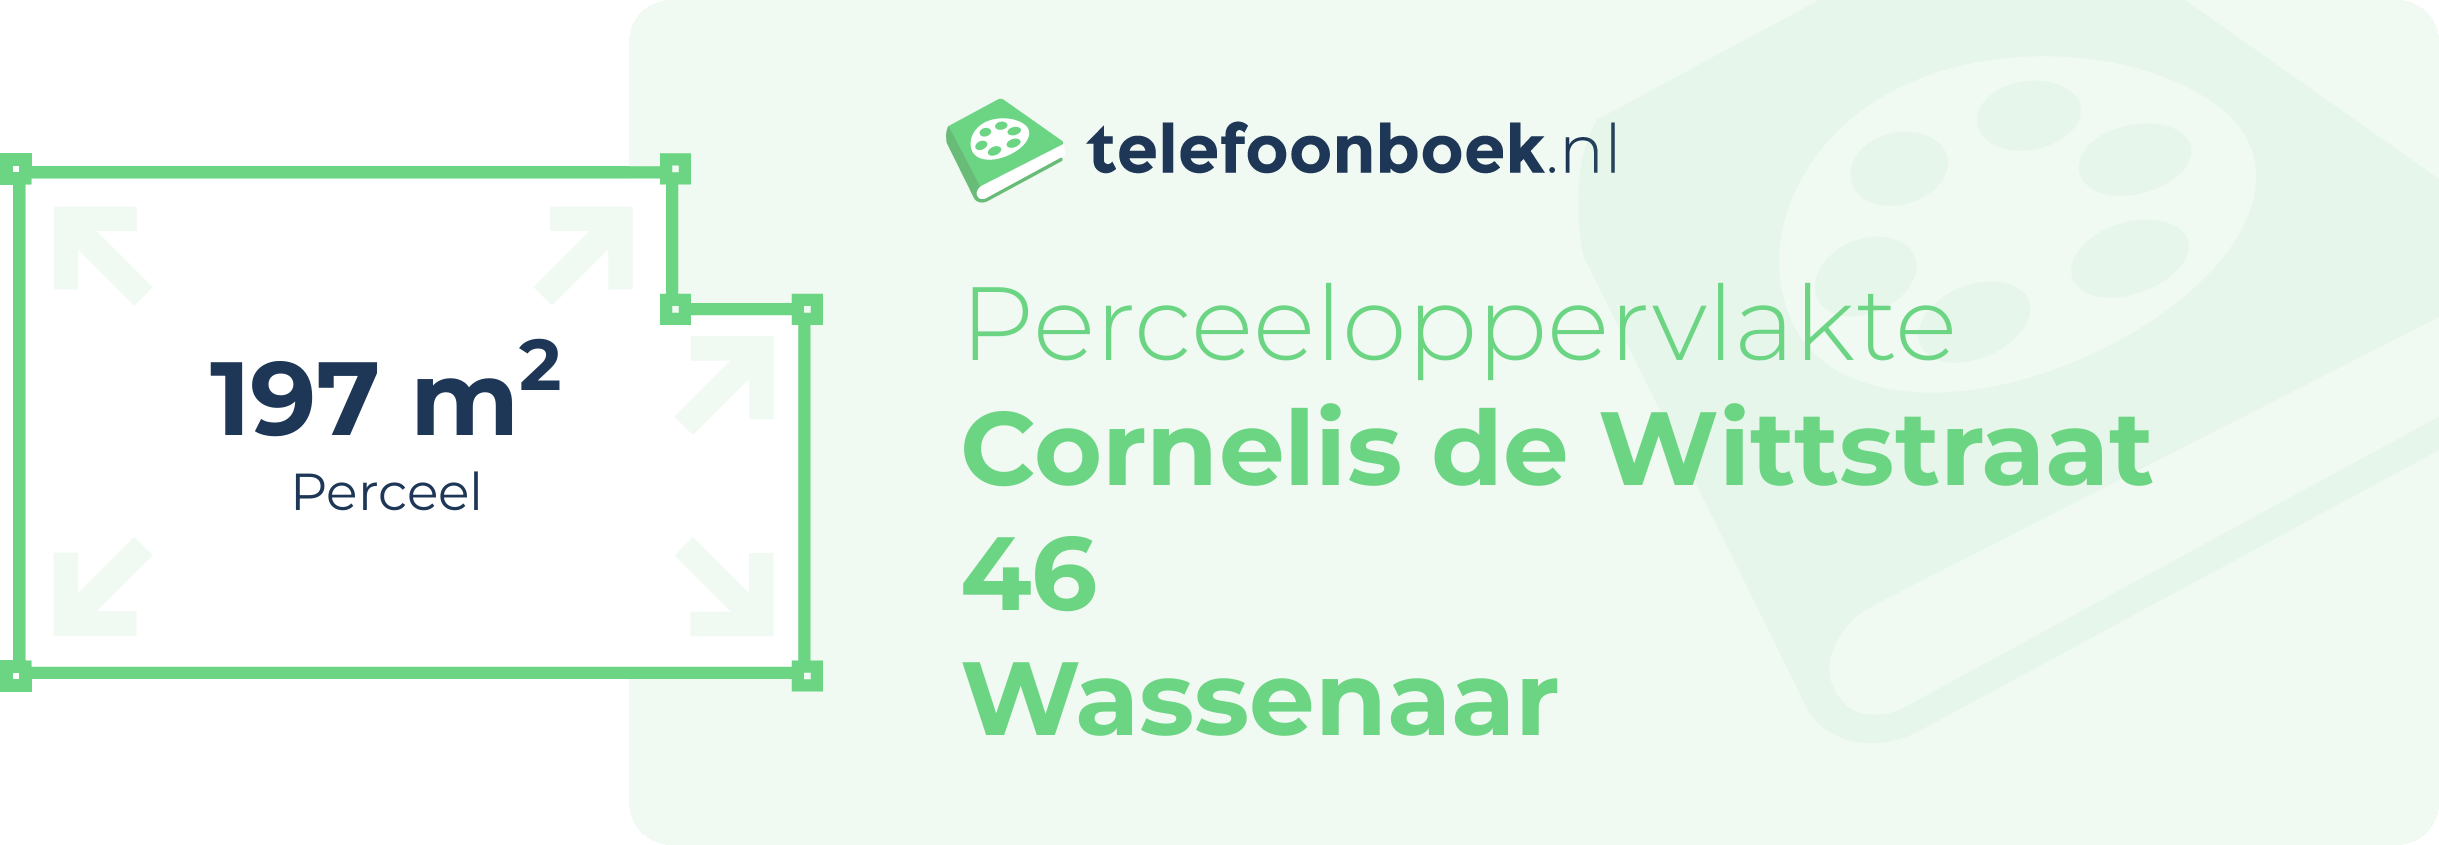 Perceeloppervlakte Cornelis De Wittstraat 46 Wassenaar